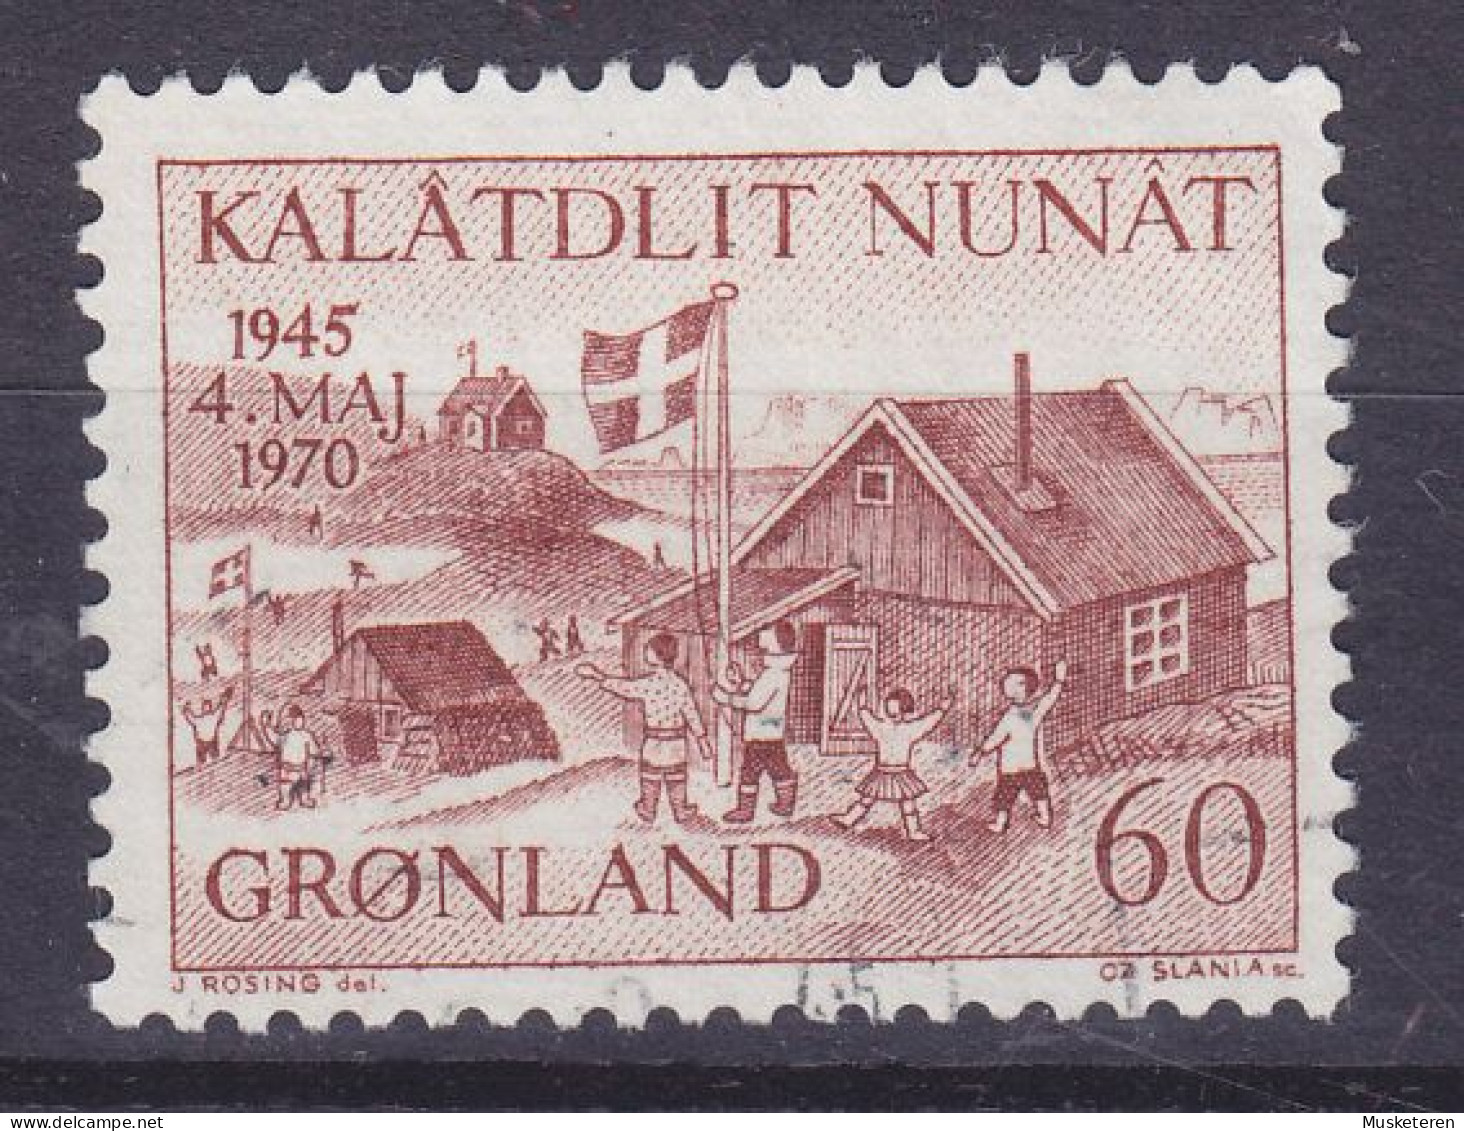 Greenland 1970 Mi. 76, 60 Ø Jahrestag Der Befreiung Dänemarks (Cz. Slania) - Usati